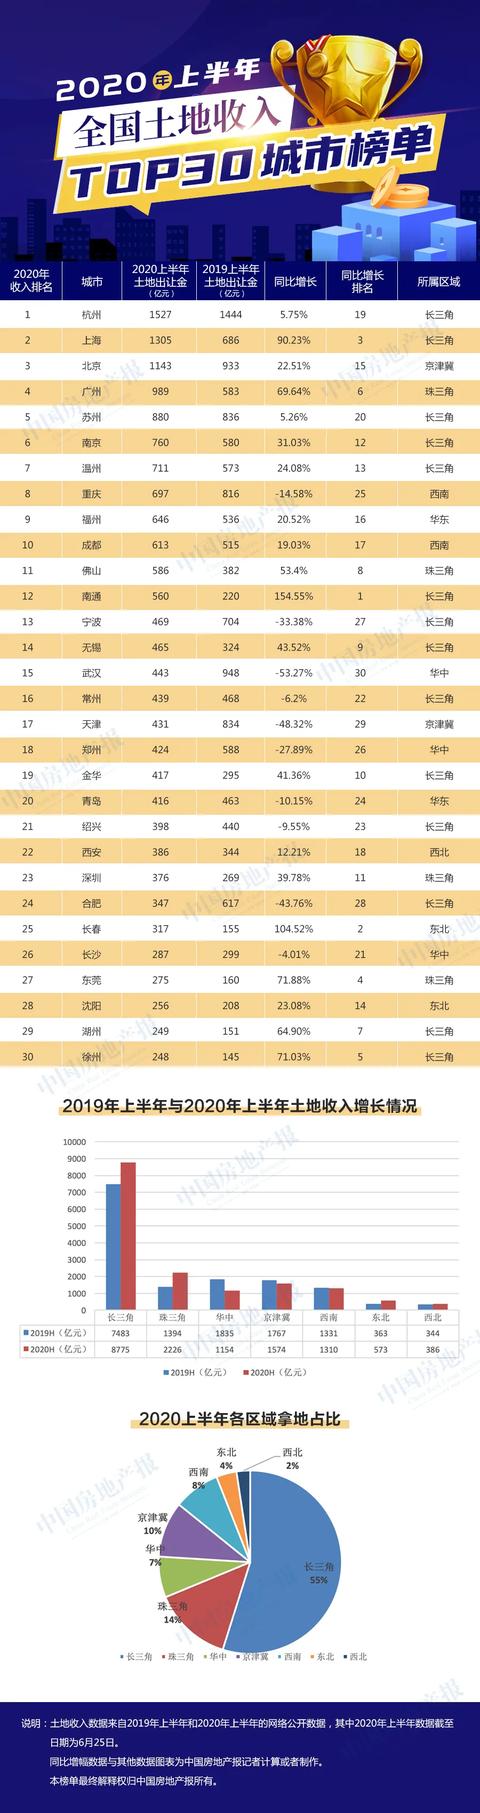 焦点 | 2020上半年重点城市卖地收入TOP30榜出炉：杭州仍是“最大财主”